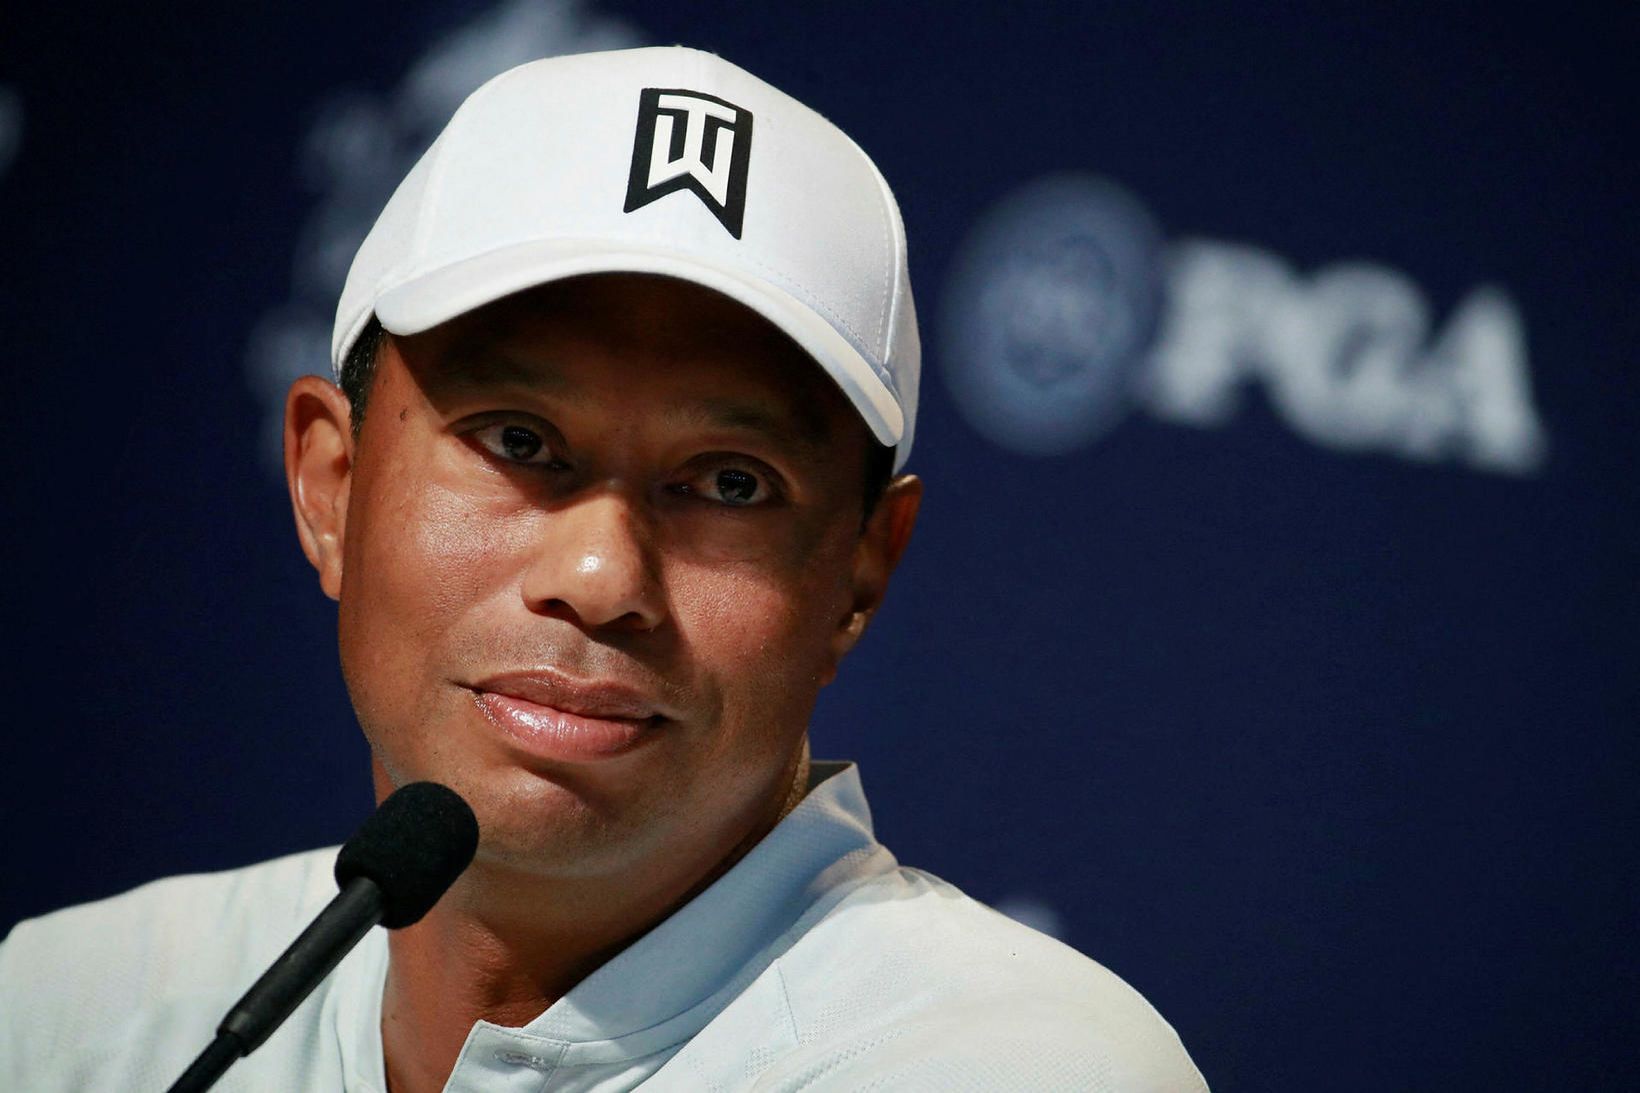 Tiger Woods lenti í alvarlegu bílslysi um síðustu helgi.